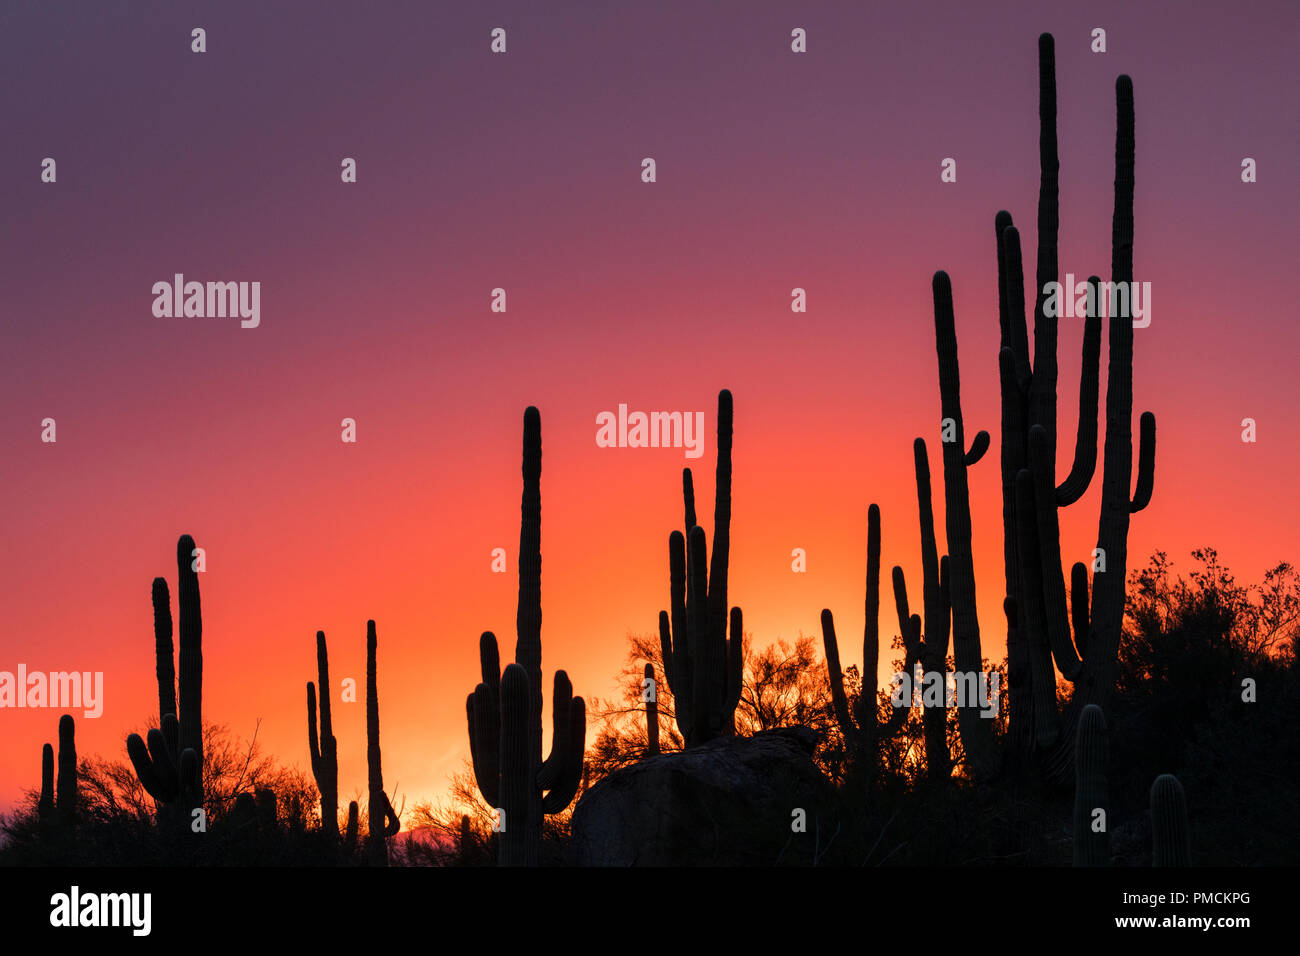 Cactus Sagauro siluetas contra el cielo del atardecer. Arizona. Foto de stock